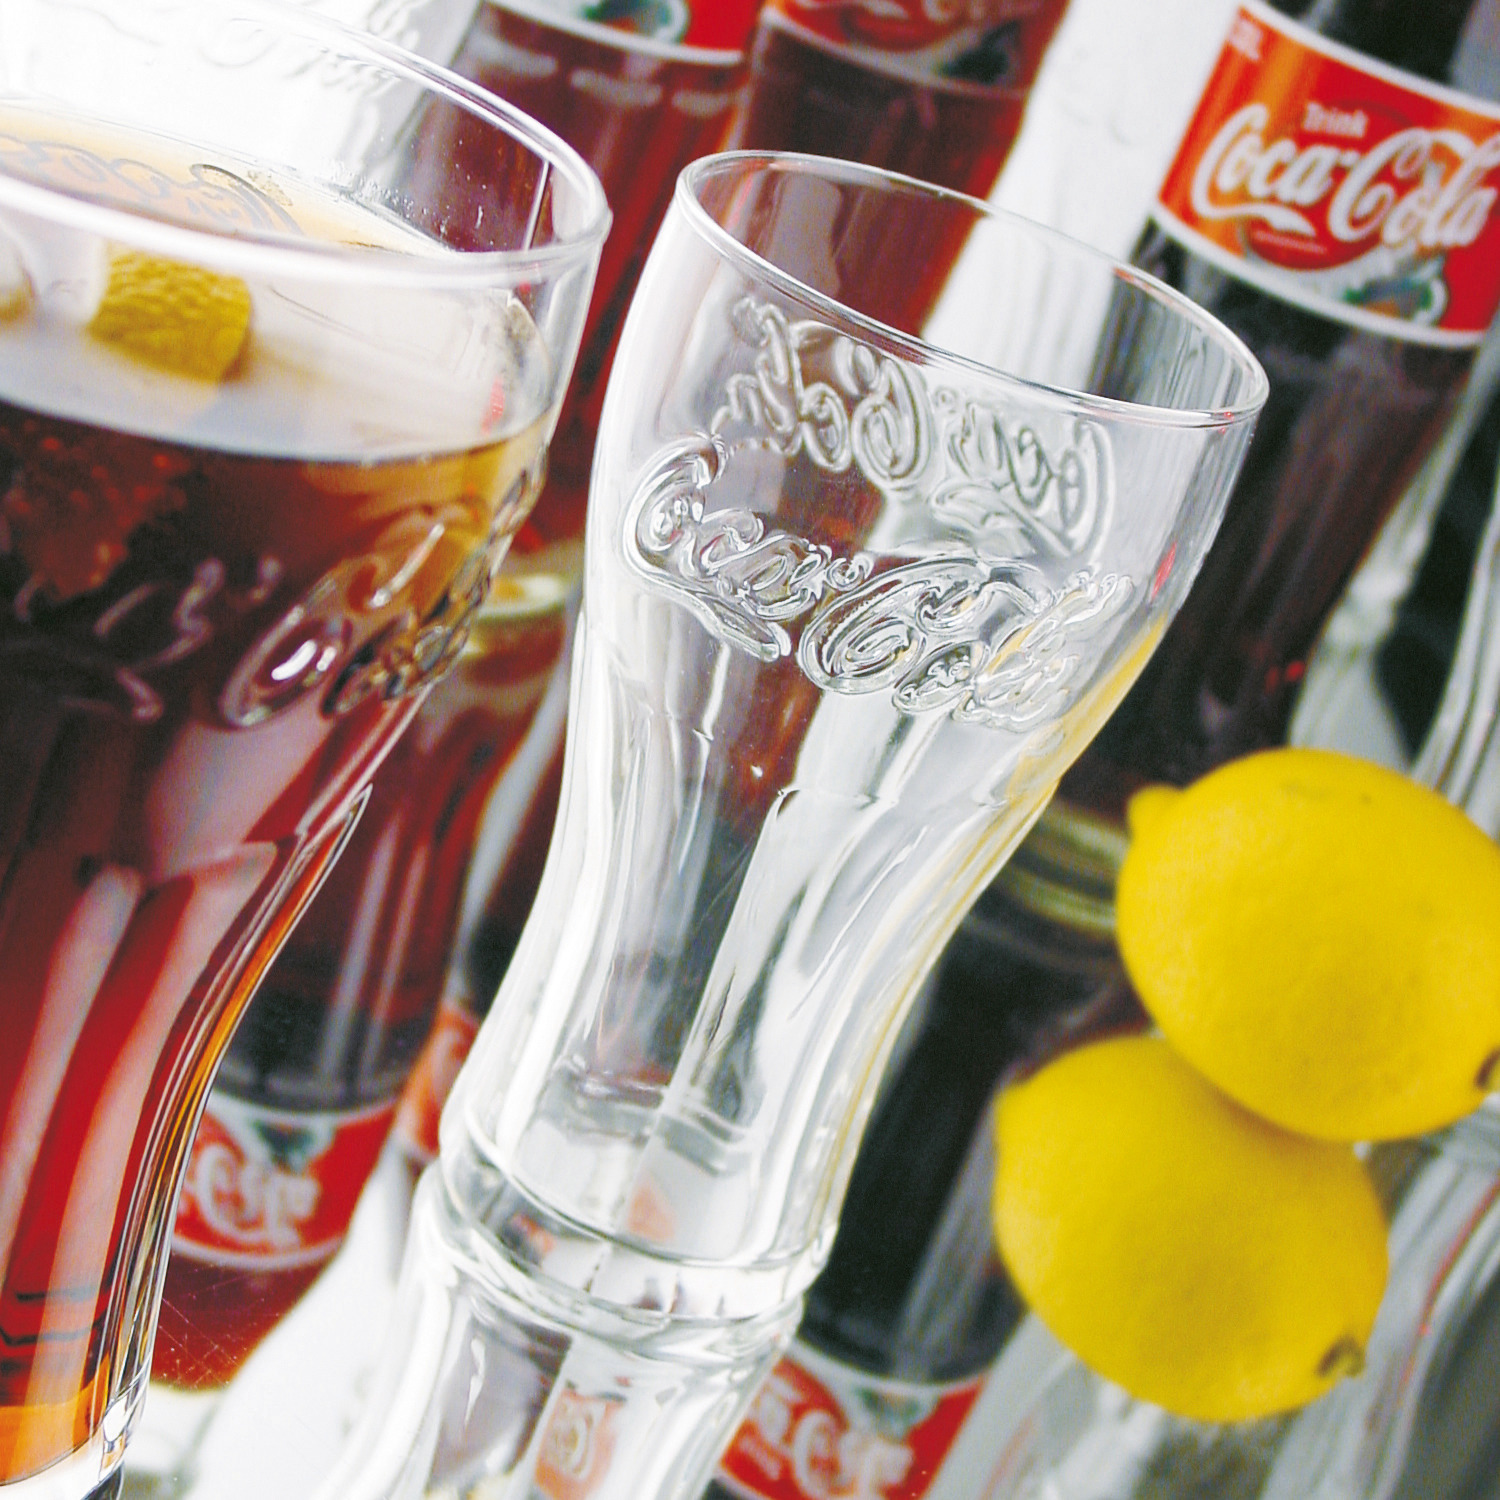 Coca-Cola "FH46" Konturglas 79 mm / 0,46 l 0,40 /-/ transparent